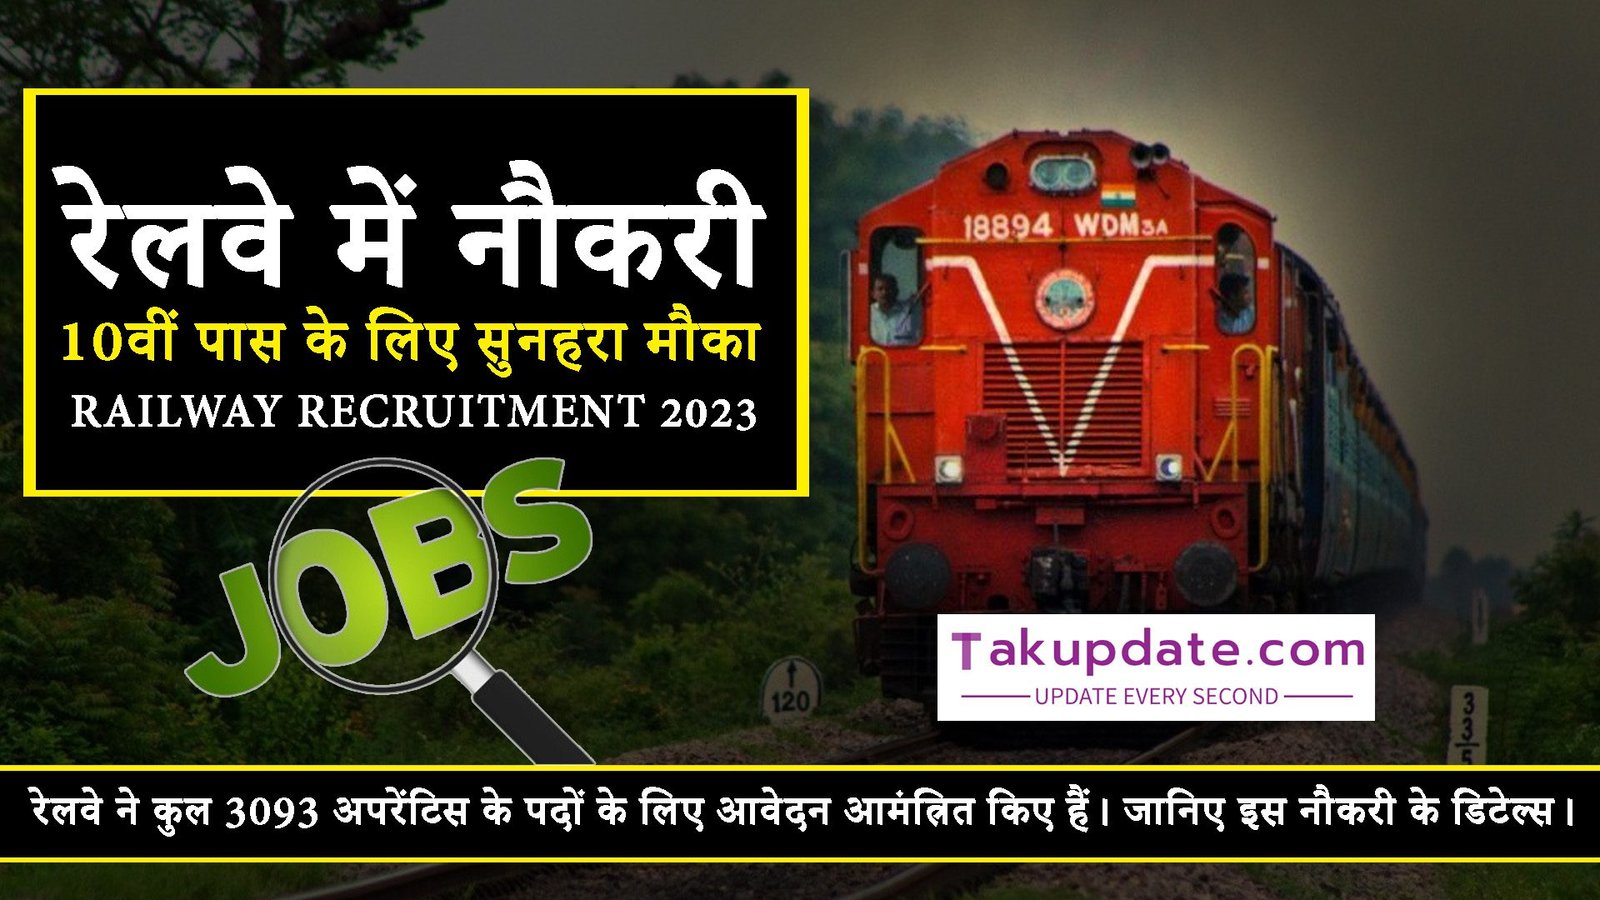 railway recruitment 2023,railway new vacancy 2023,railway vacancy 2023,indian railway recruitment 2023,railway tc recruitment 2023,railway jobs 2023,railway new recruitment 2023,railway ntpc recruitment 2023,railway new vacancy 2023 update,railway upcoming vacancy 2023,railway tte recruitment 2023,railway tc vacancy 2023,railway alp new vacancy 2023,railway group d new vacancy 2023,railway tte vacancy 2023,railway alp vacancy 2023